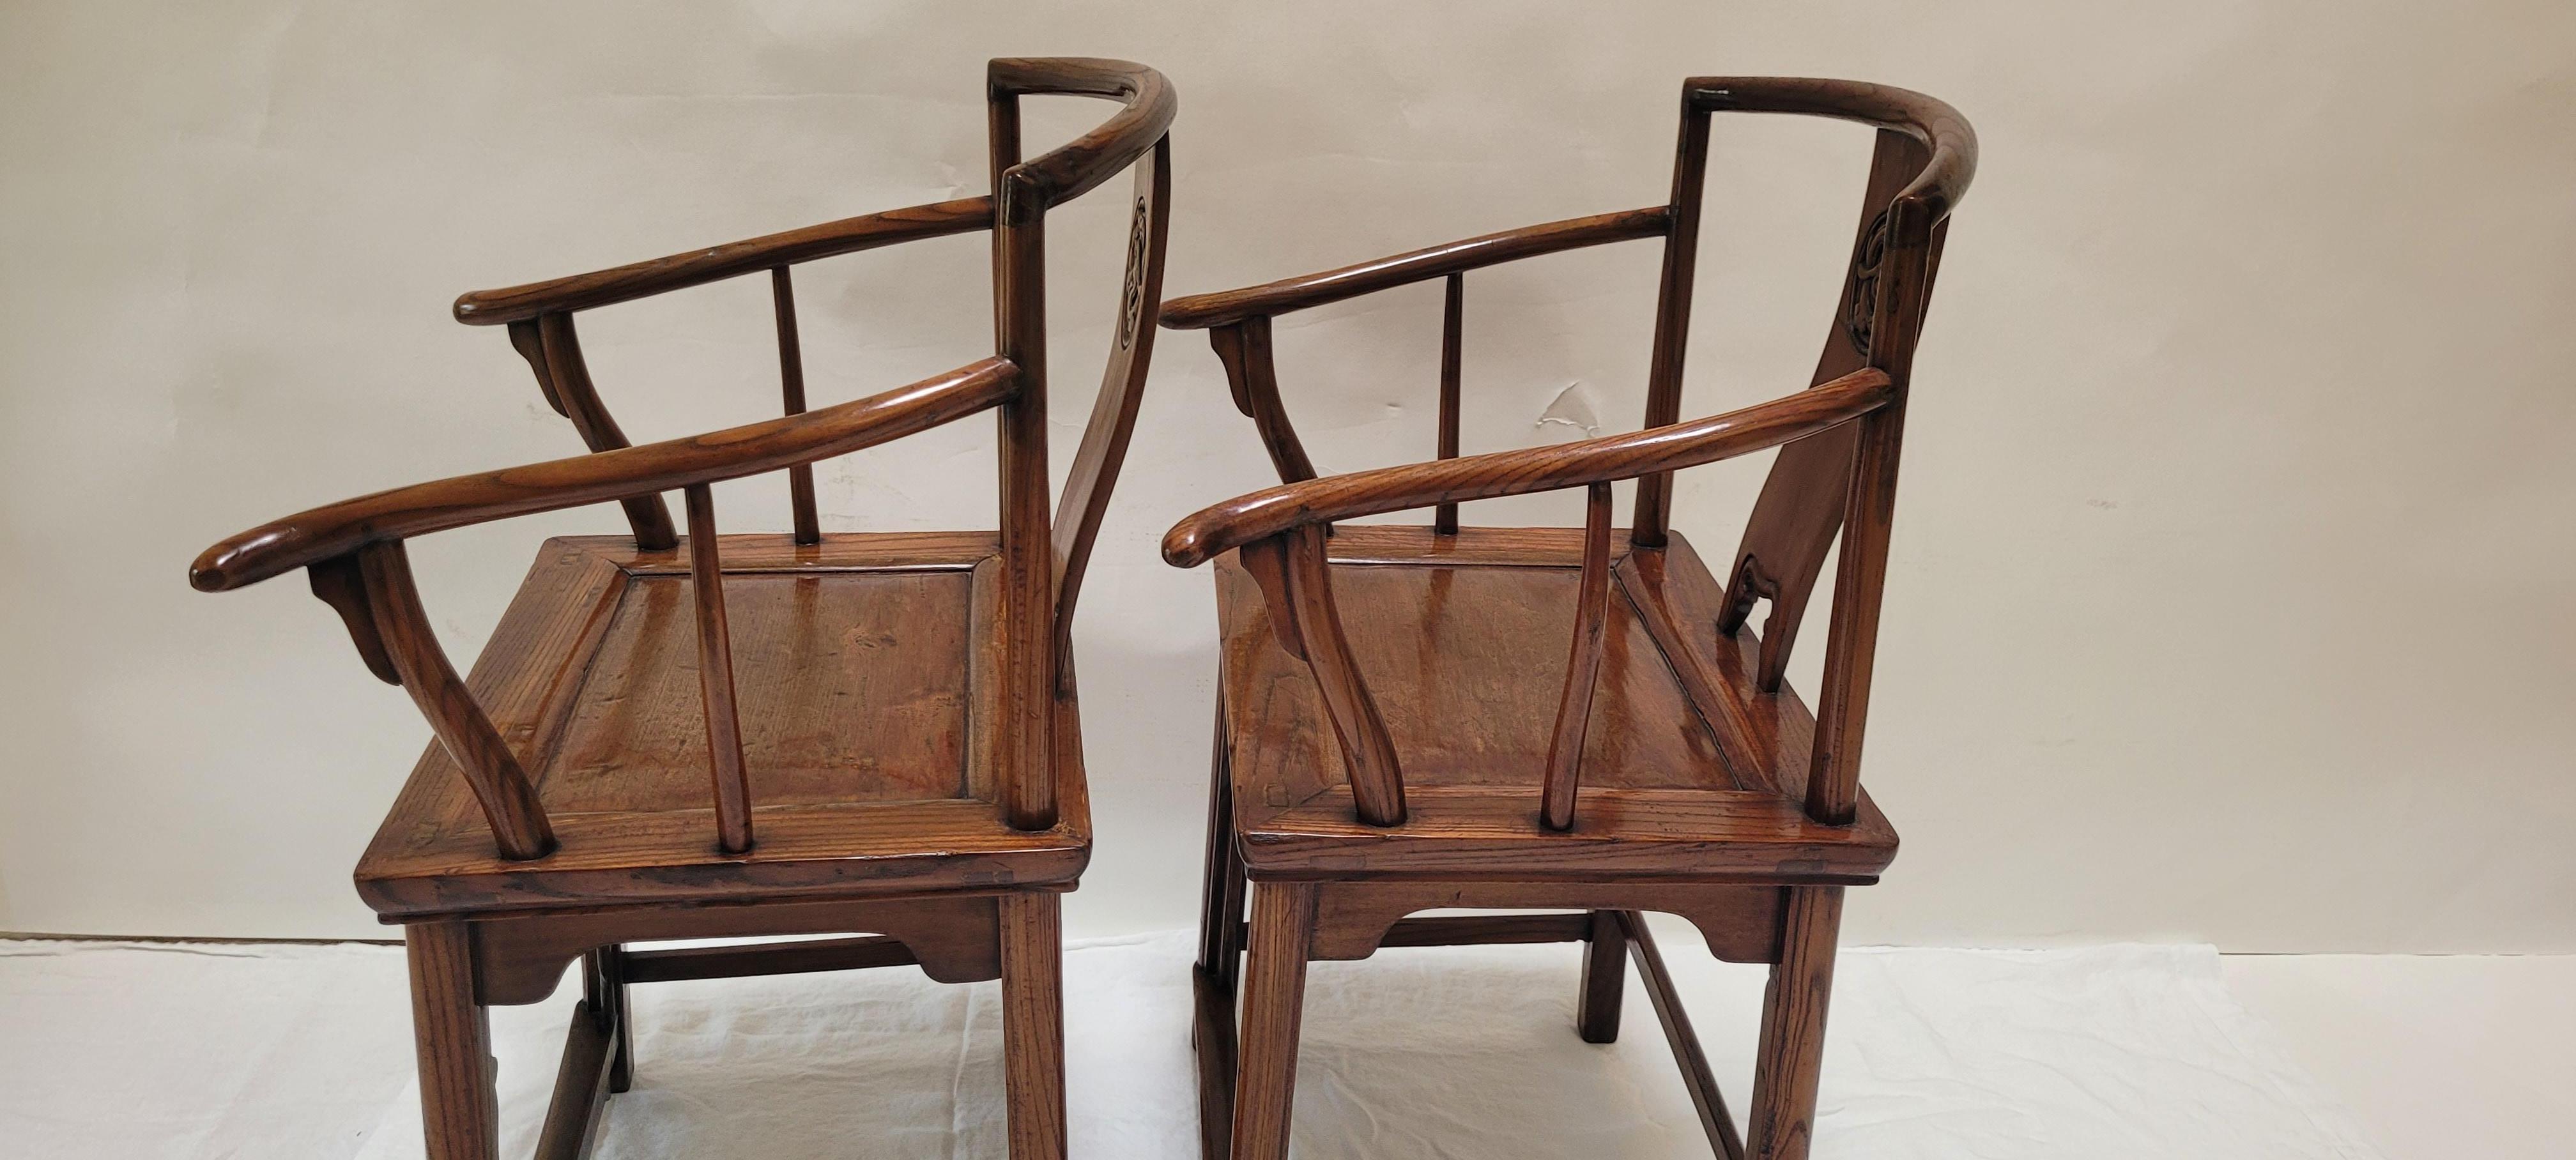  Paar Wenyi-Sessel	37.25h x 22w x 16.75d
Dies ist ein Paar Wenyi-Sessel (Gelehrten-Sessel).  Das Geländer hat keine überstehenden Enden, wohl aber die Arme.  Dieses Paar gilt als etwas ungewöhnlich, da die Stützbalken unter den Armen kein